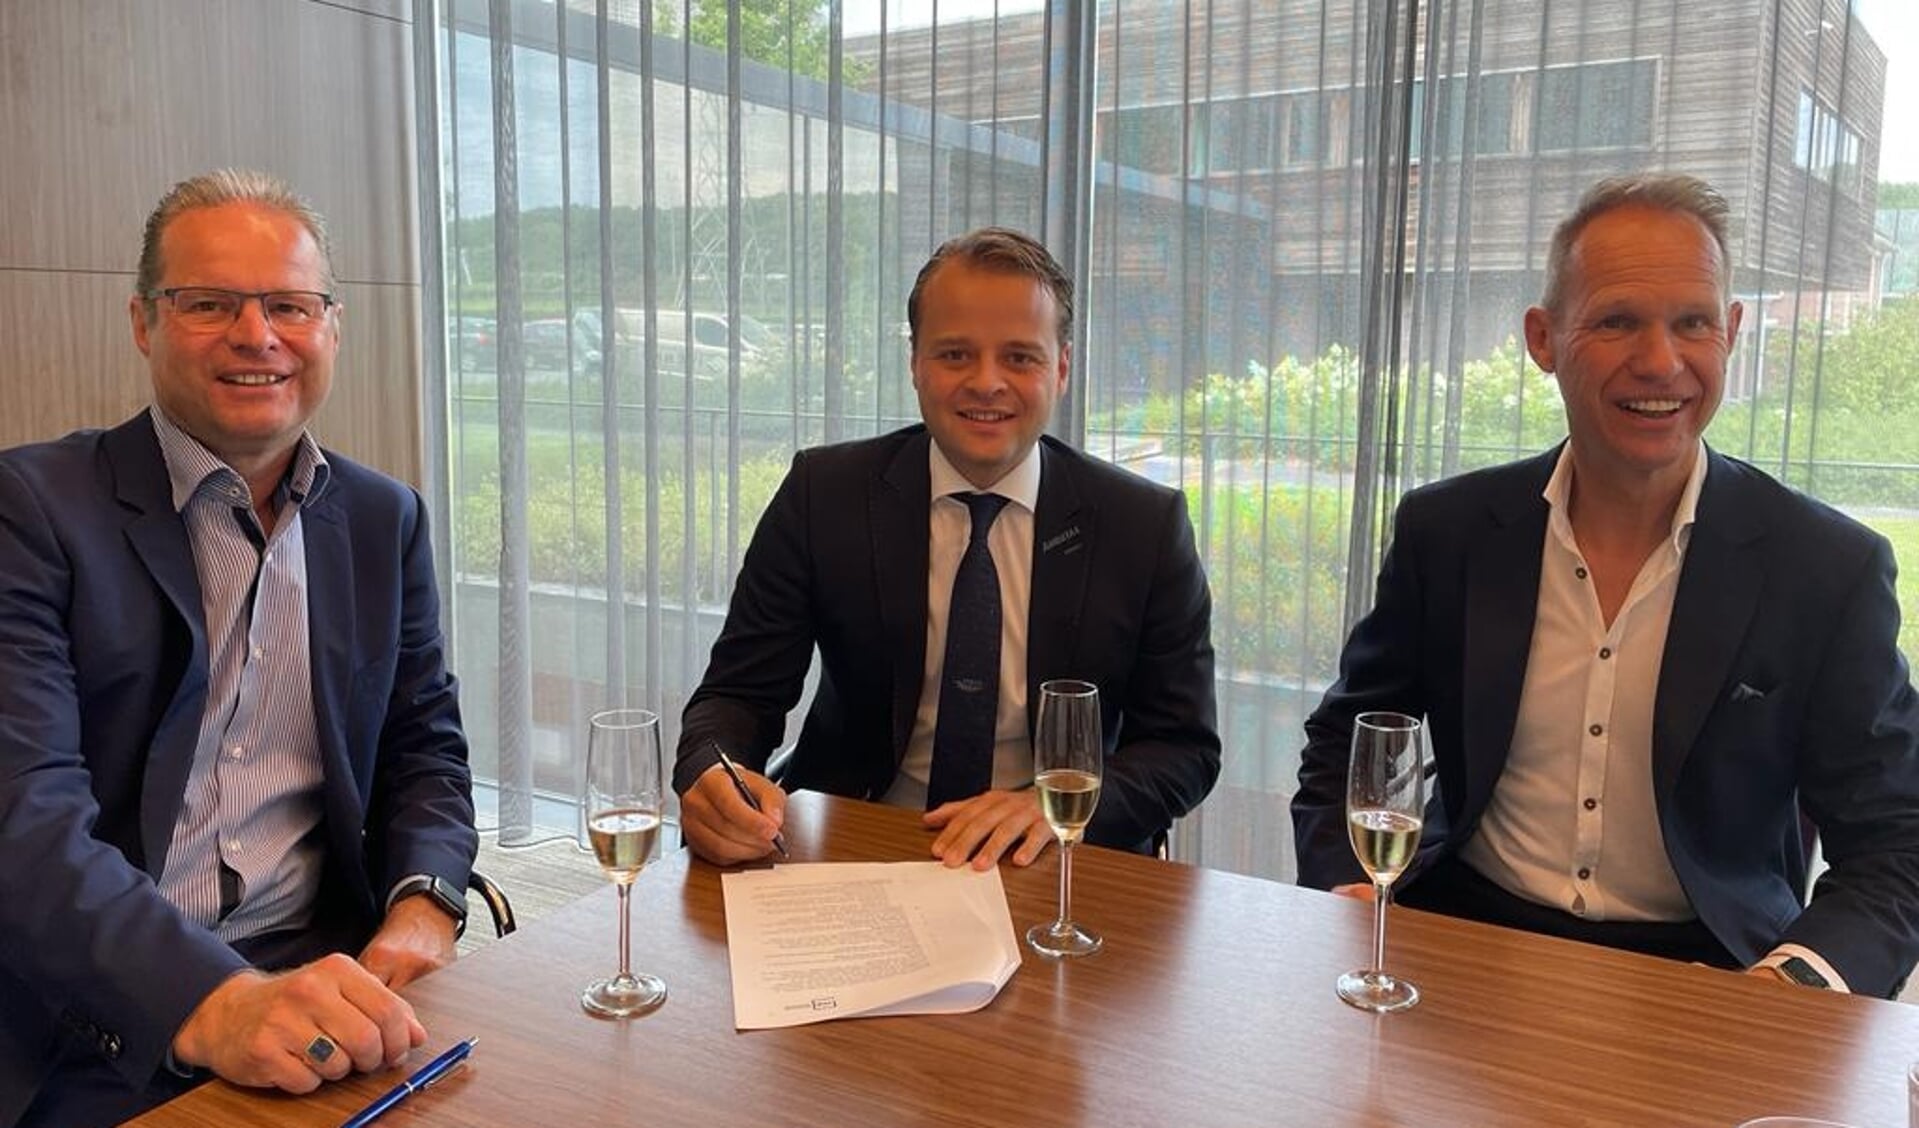 Geert-Jan Willems, Sjors van de Veerdonk en Rob Willems tijdens de ondertekening van de overeenkomst.